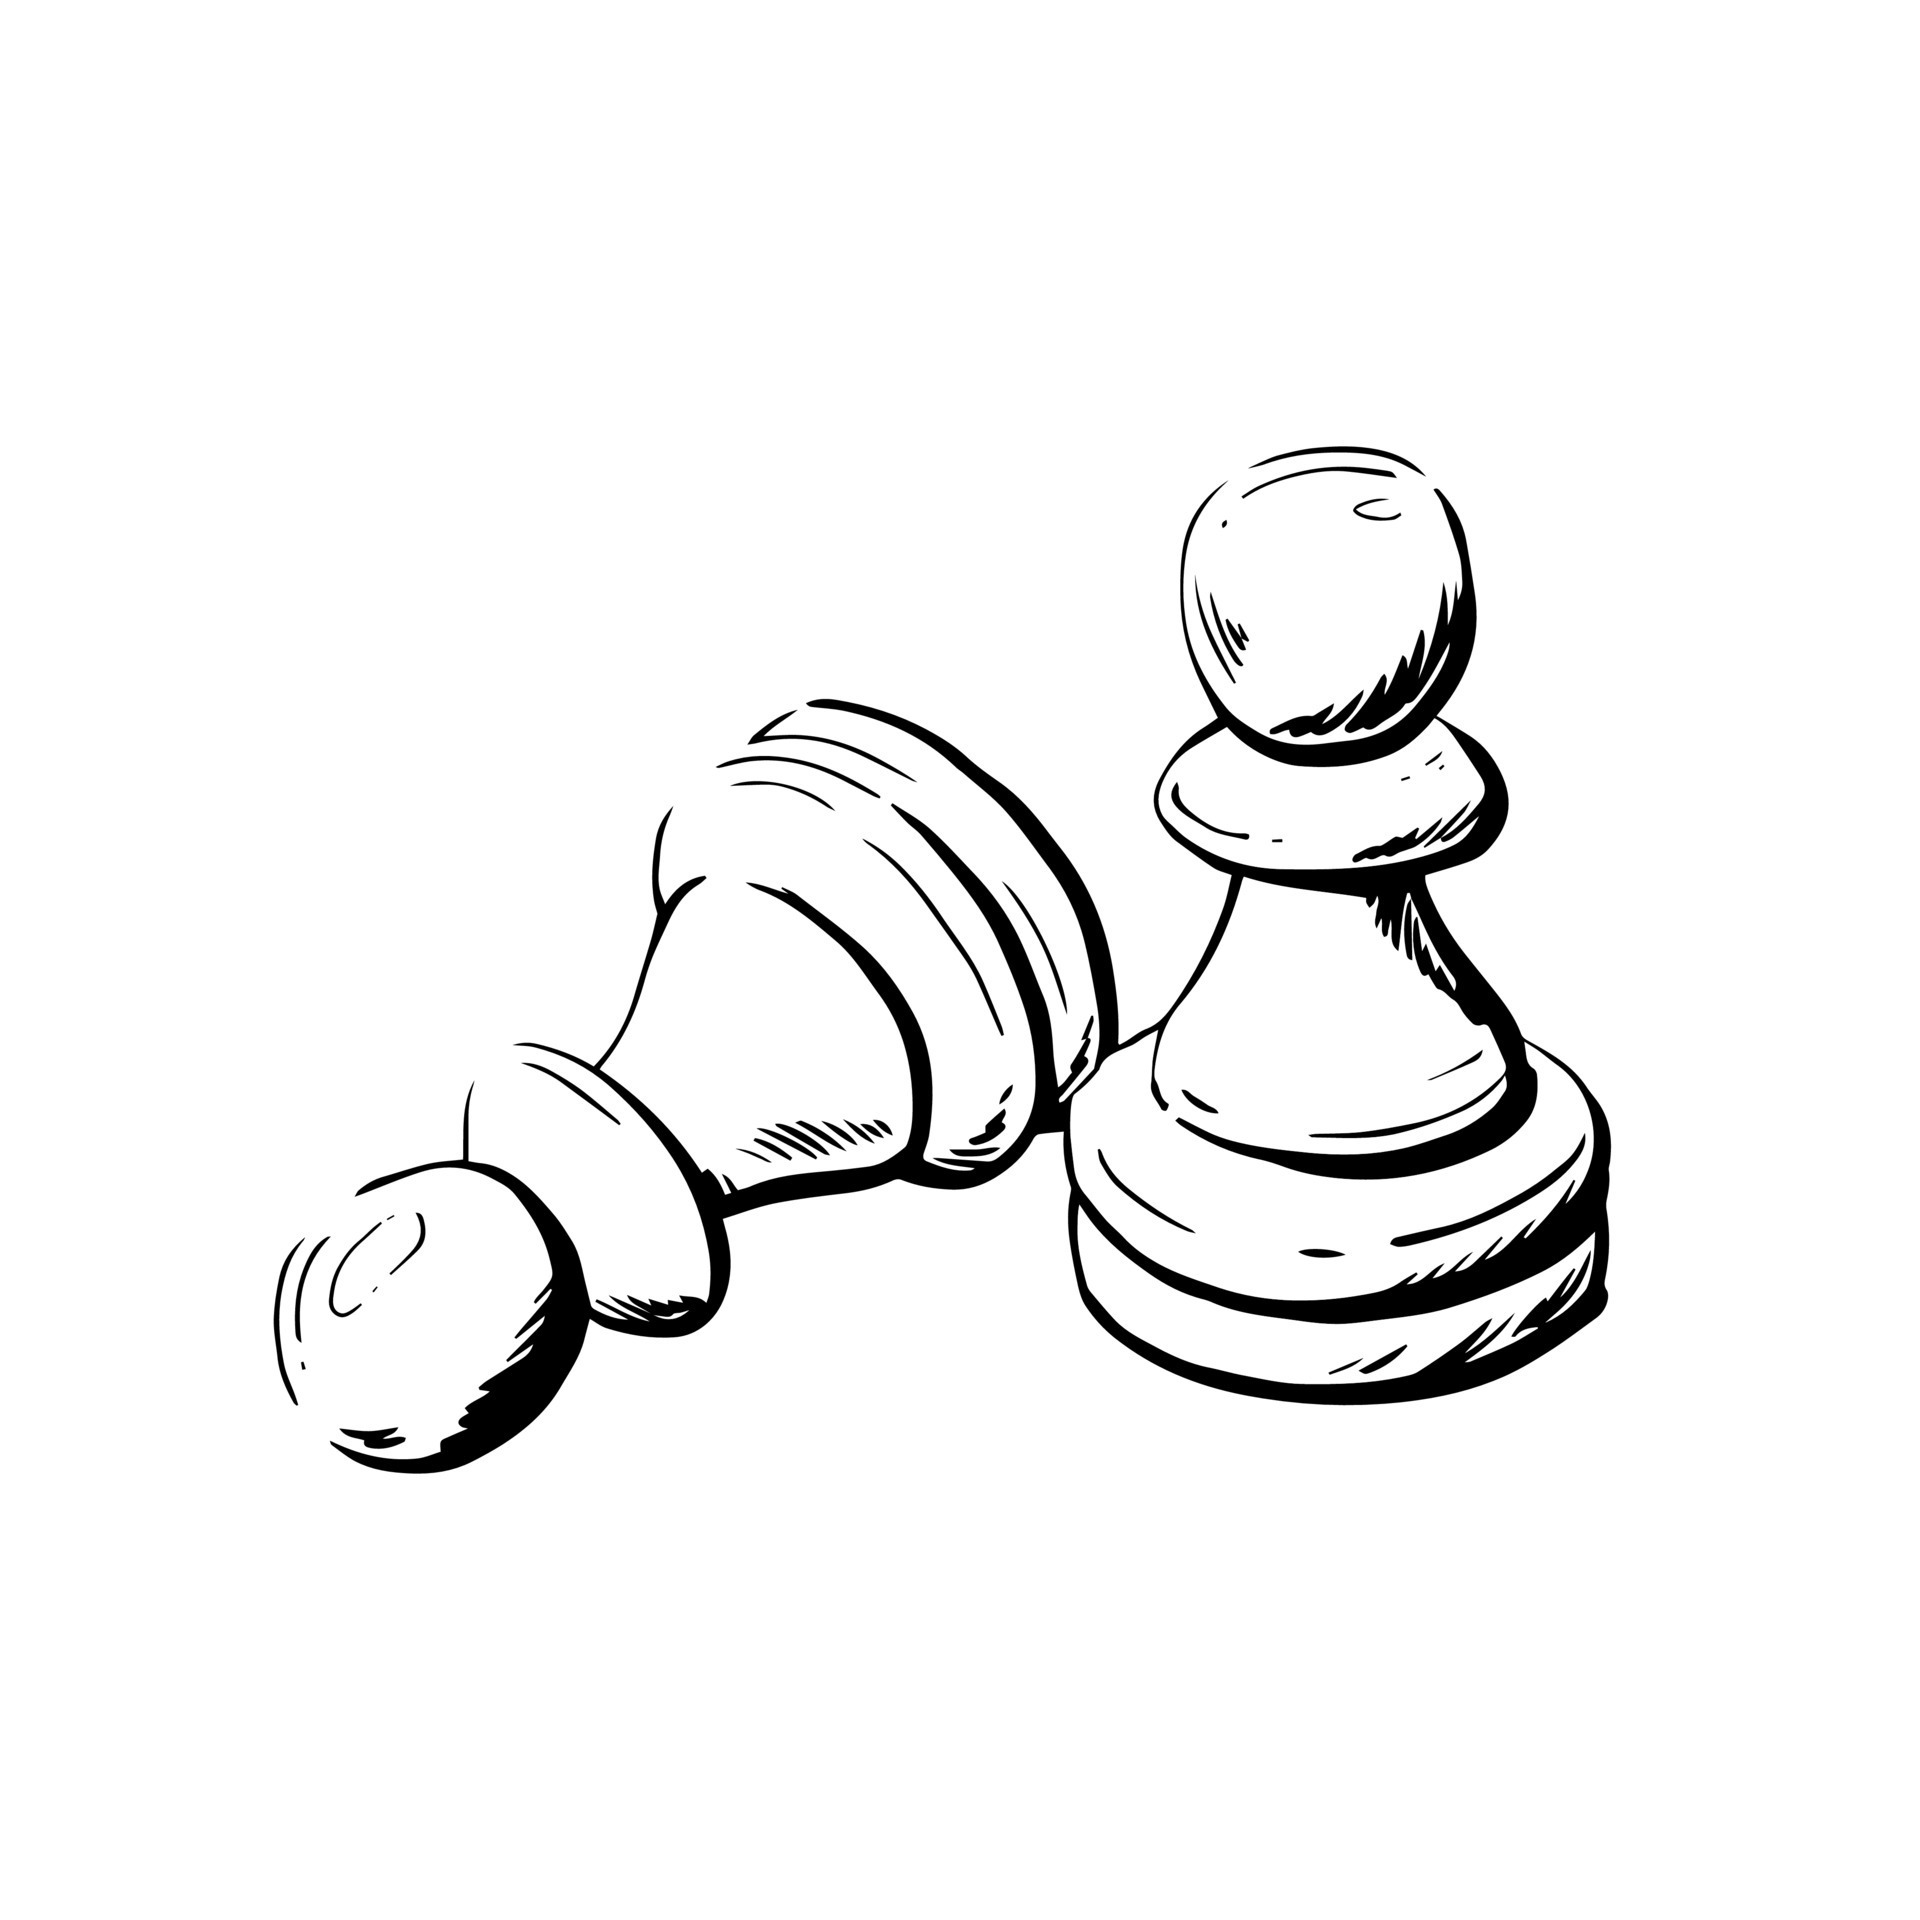 Desenhando a mão livre, estudo de formas de uma peça de xadrez